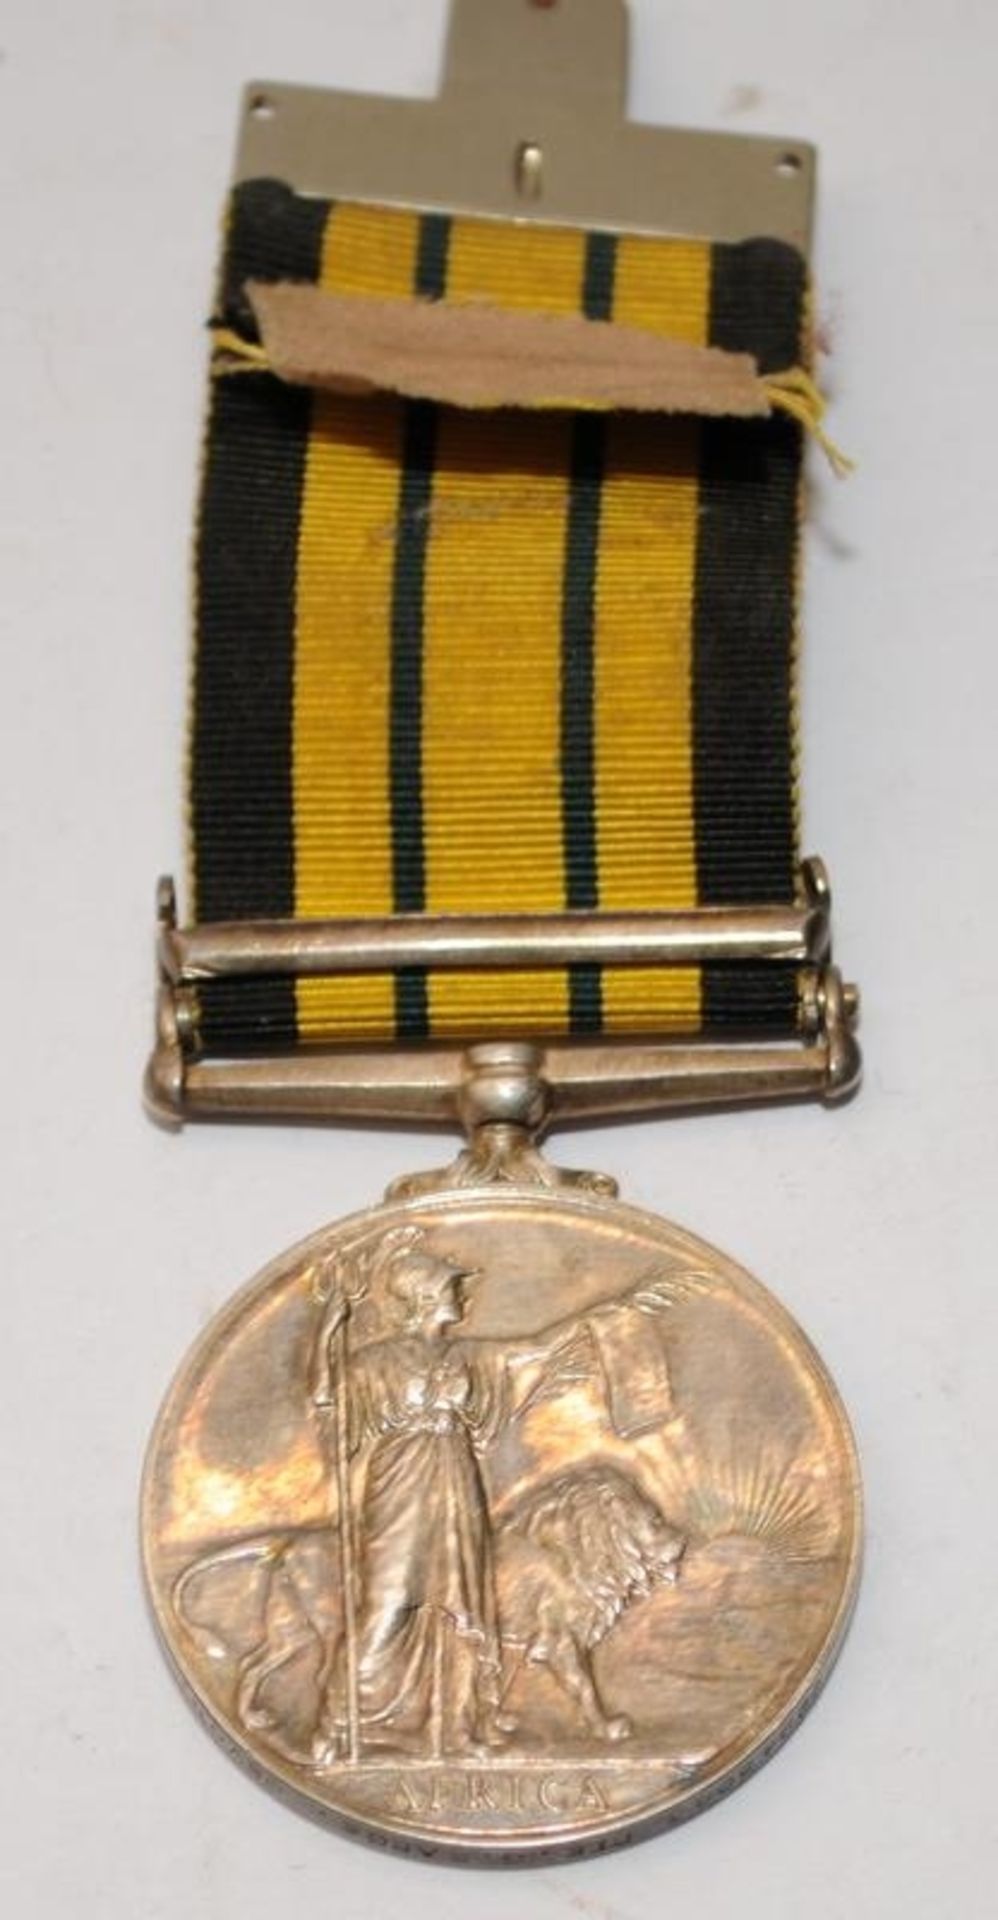 Africa General service medal with Kenya Bar issued to 22945043 Pte. G. Barge - Devon Regt. Lot - Image 3 of 6